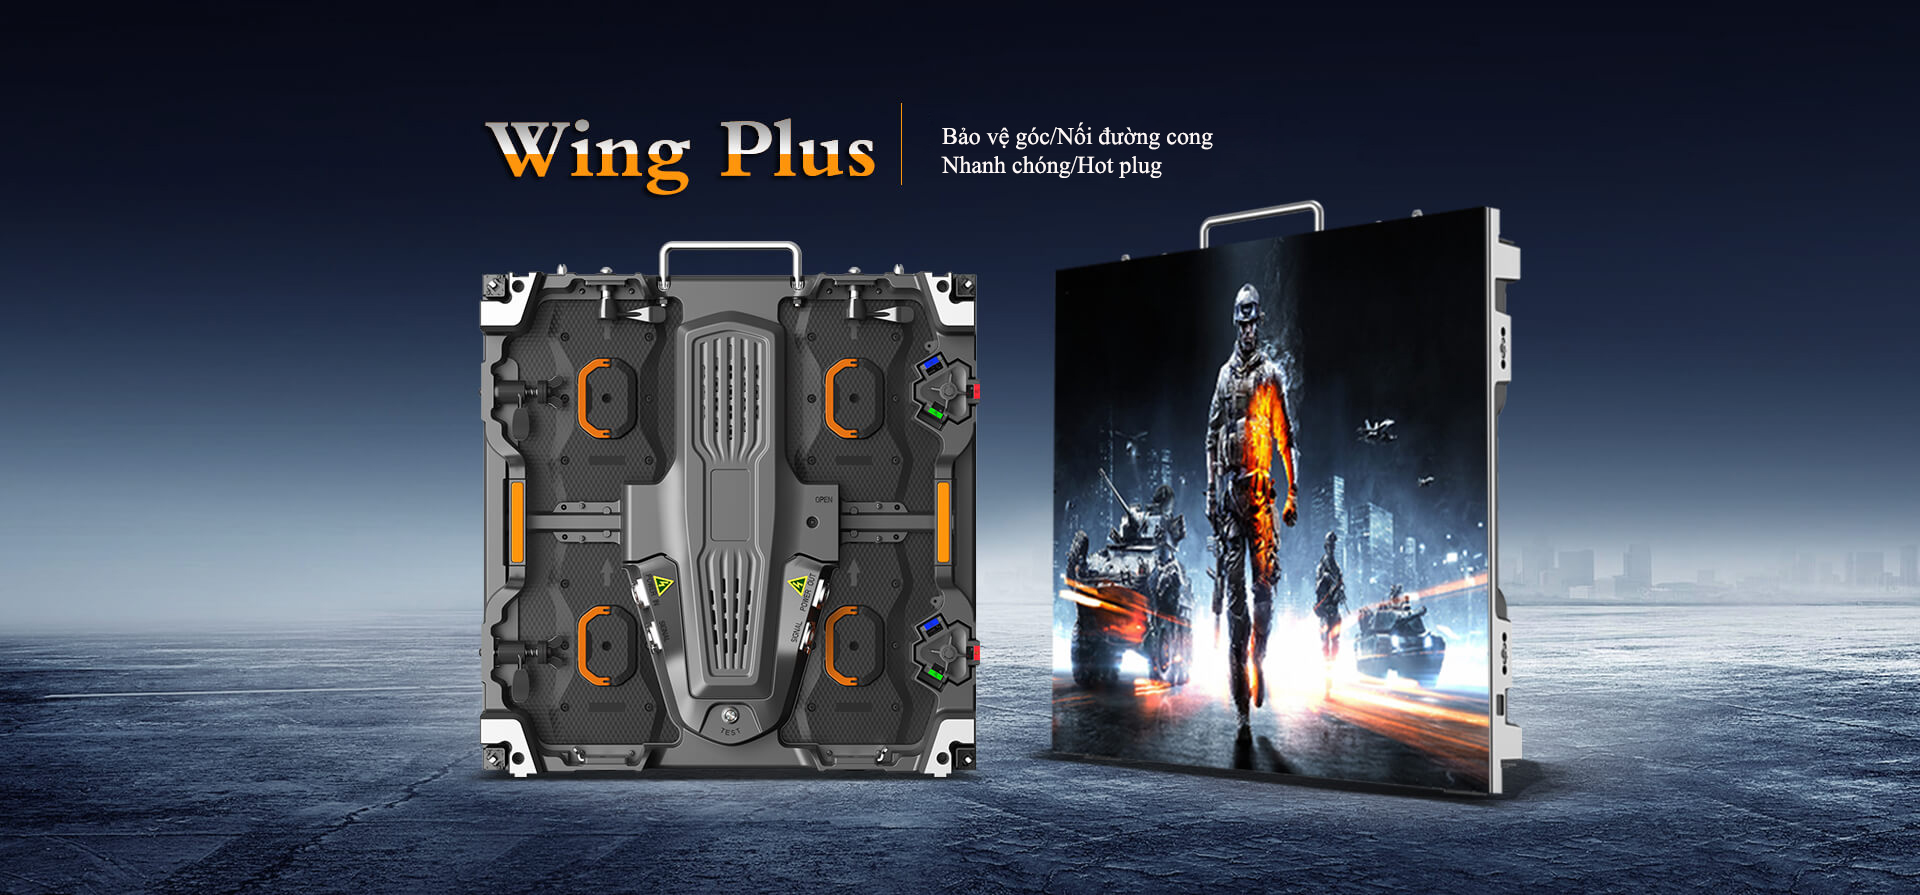 Màn hình led sự kiện dòng Wing Plus (1)